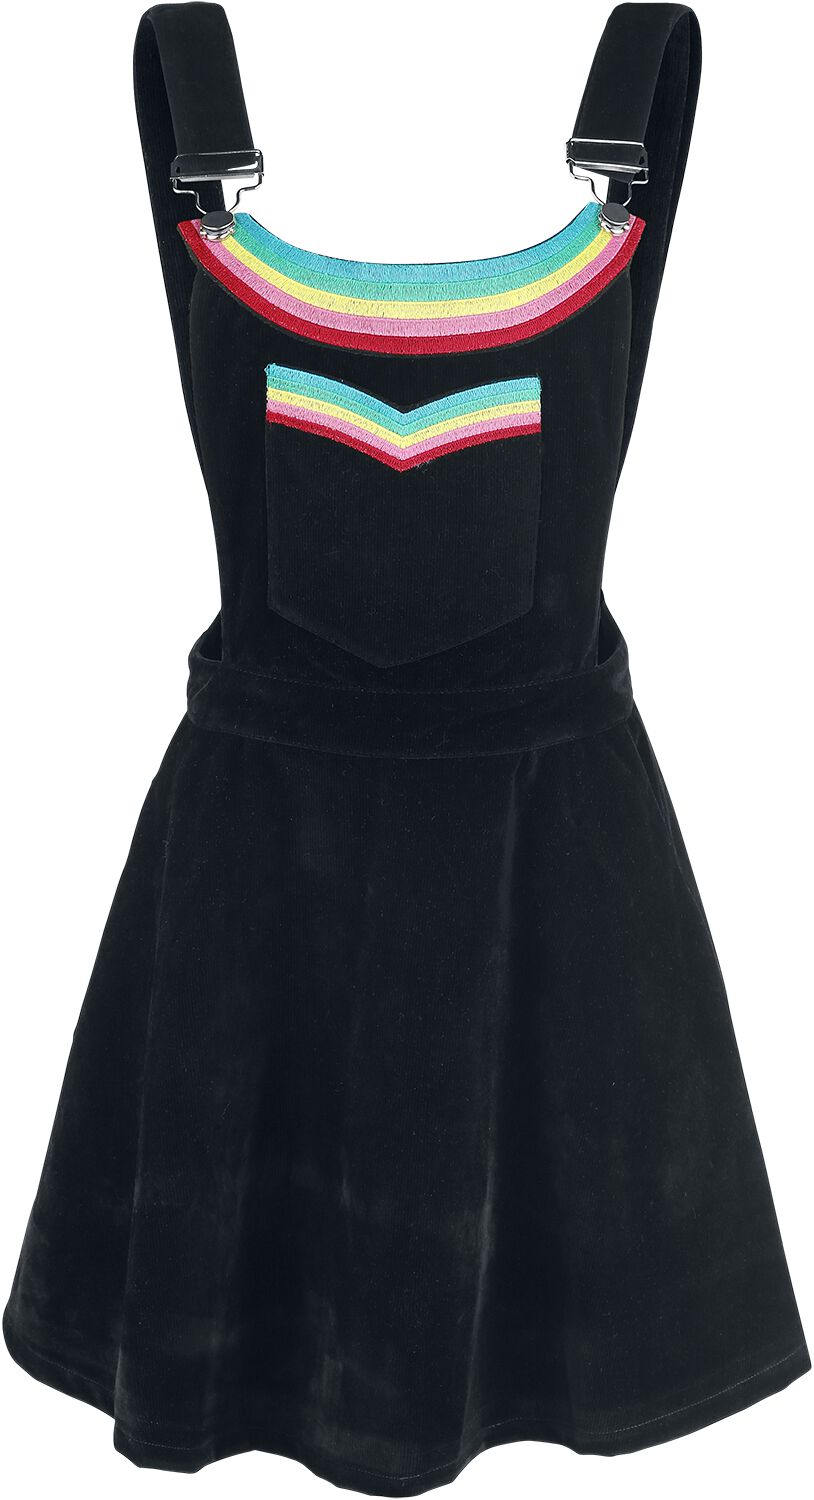 Robe courte de Jawbreaker - Robe Double Rainbow - S à XL - pour Femme - noir